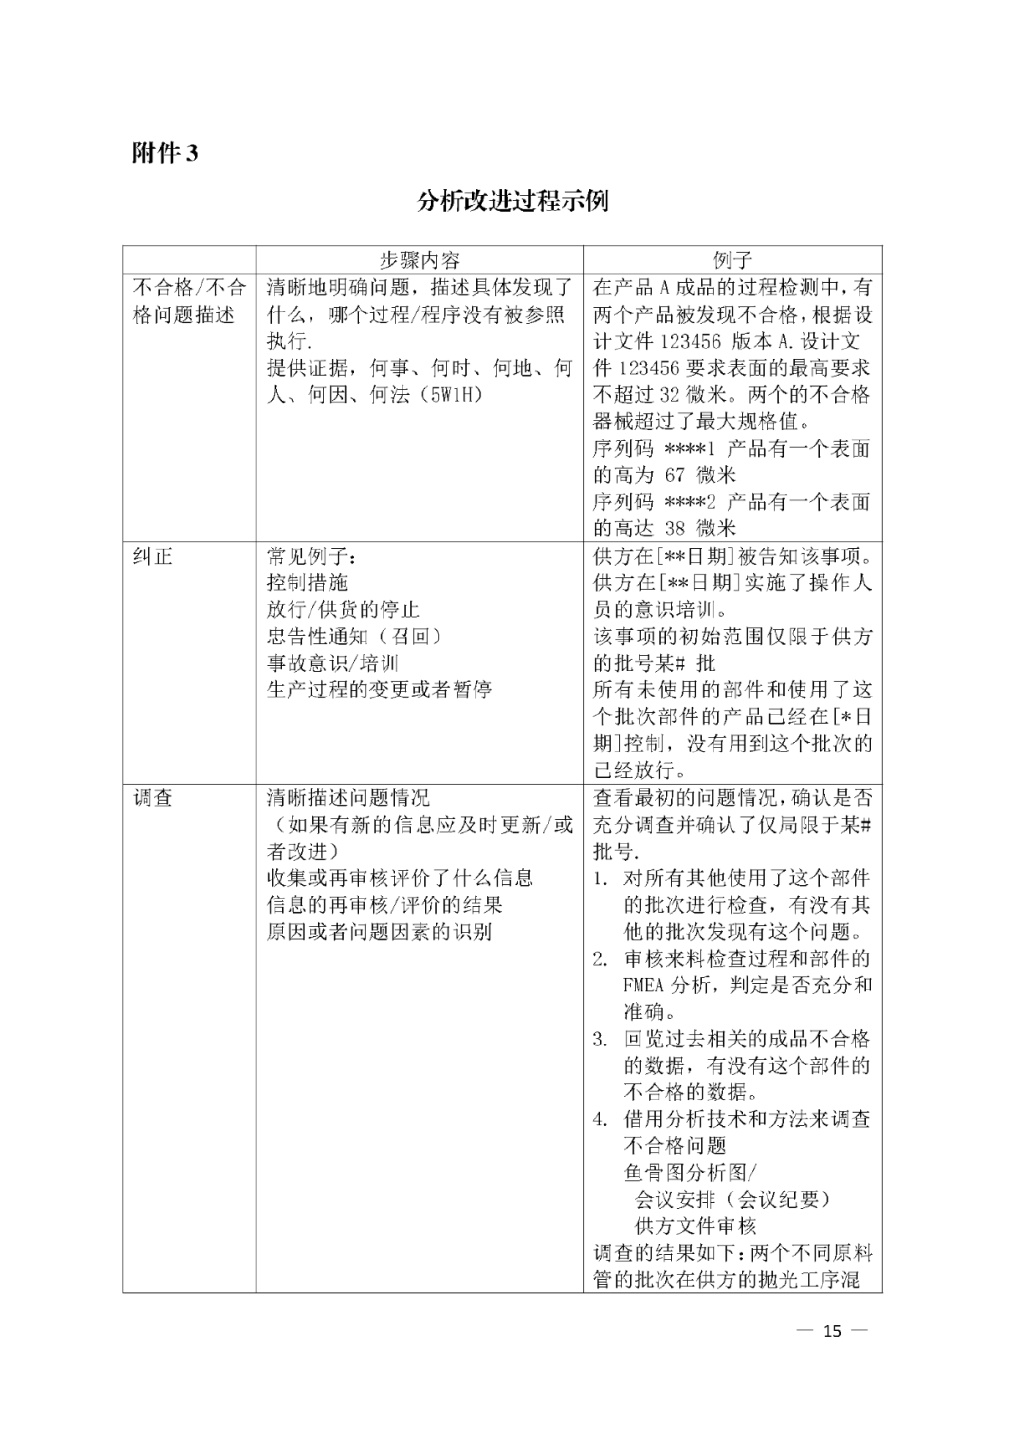 【安徽】发布医疗器械质量管理分析改进工作指南(图15)